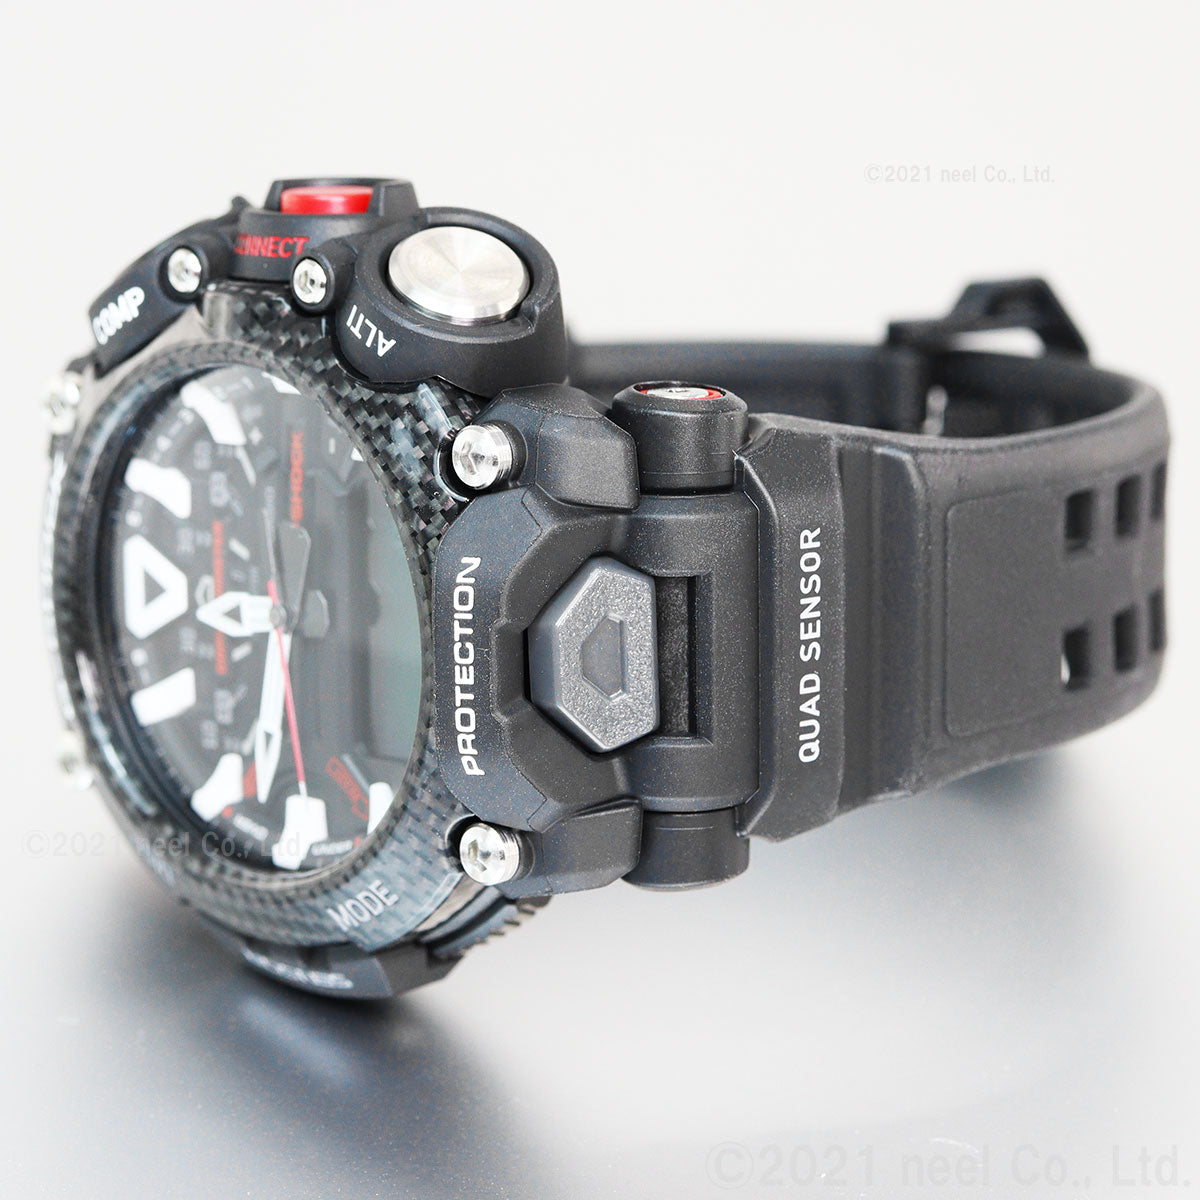 G-SHOCK カシオ Gショック グラビティマスター GRAVITYMASTER CASIO 腕時計 メンズ MASTER OF G GR-B200-1AJF